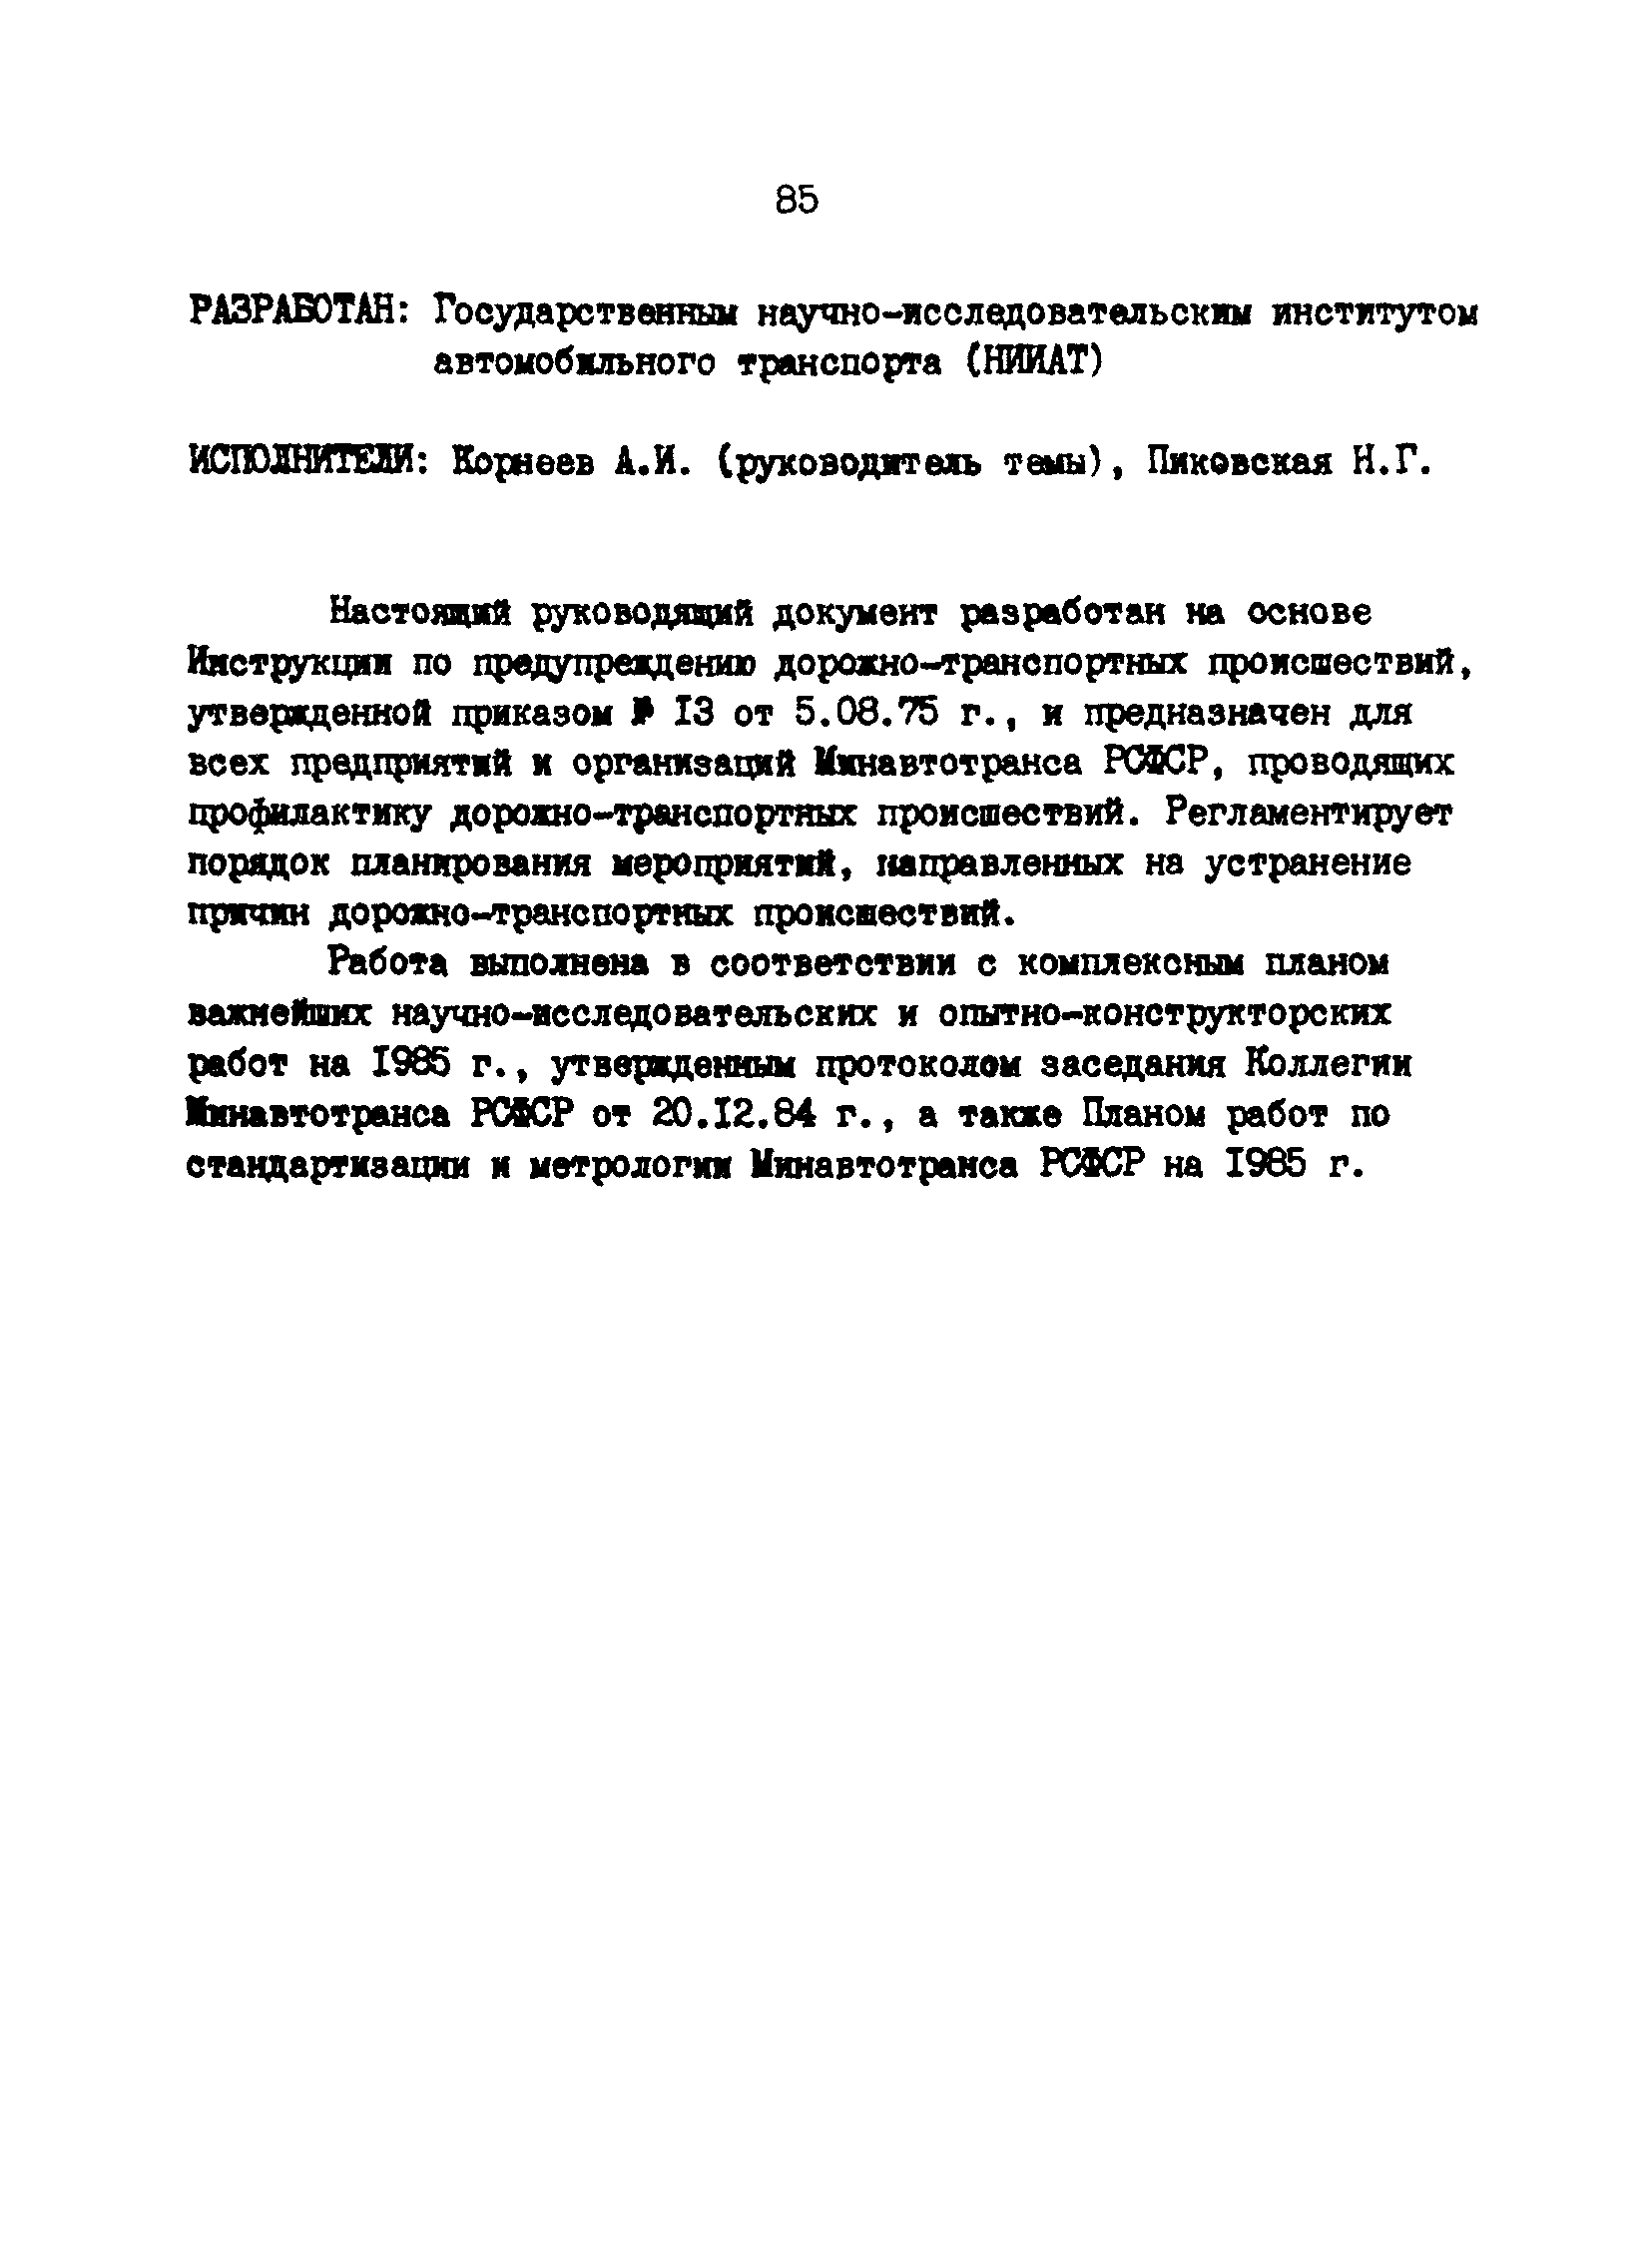 РД 200-РСФСР-12-0071-86-08